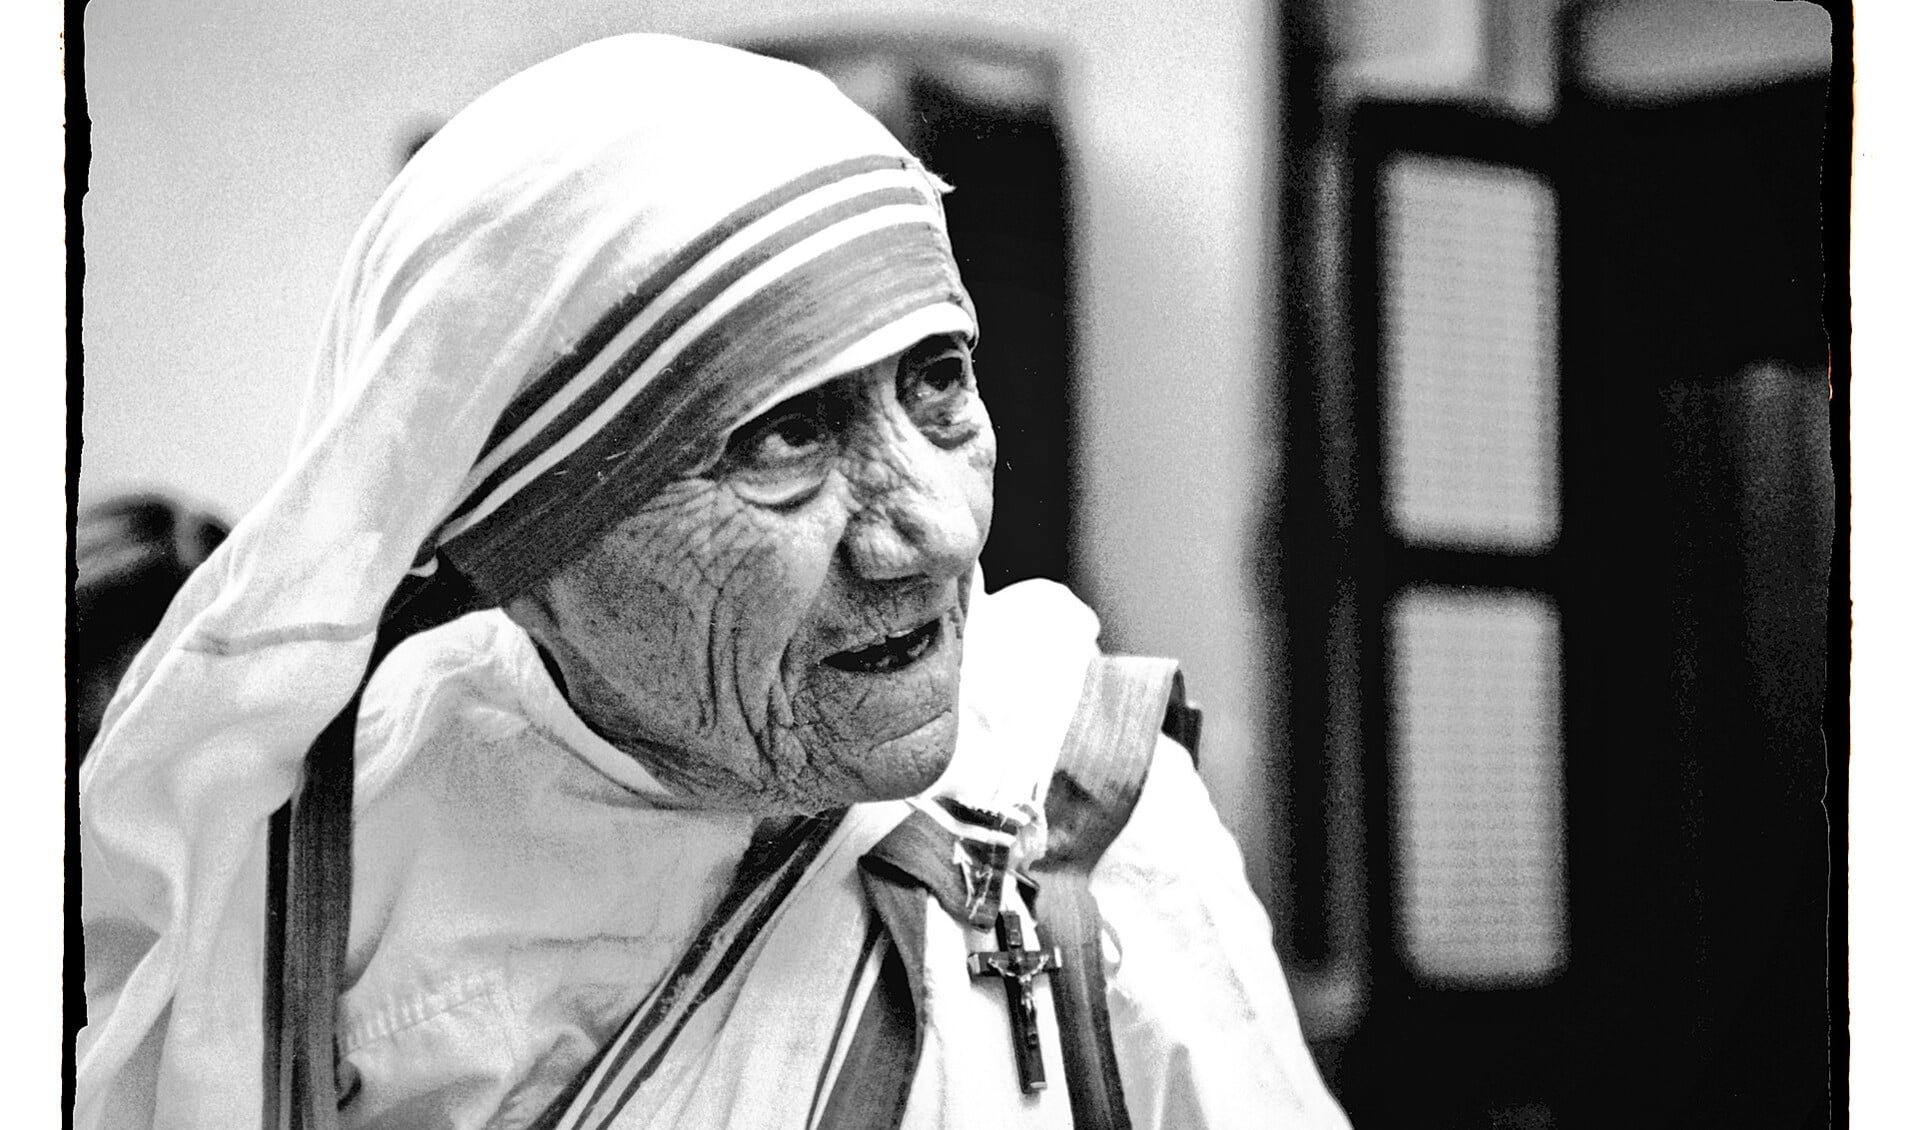 Moeder Teresa, voor wier heiligverklaring, zondag in het Vaticaan, honderdduizenden pelgrims worden verwacht.